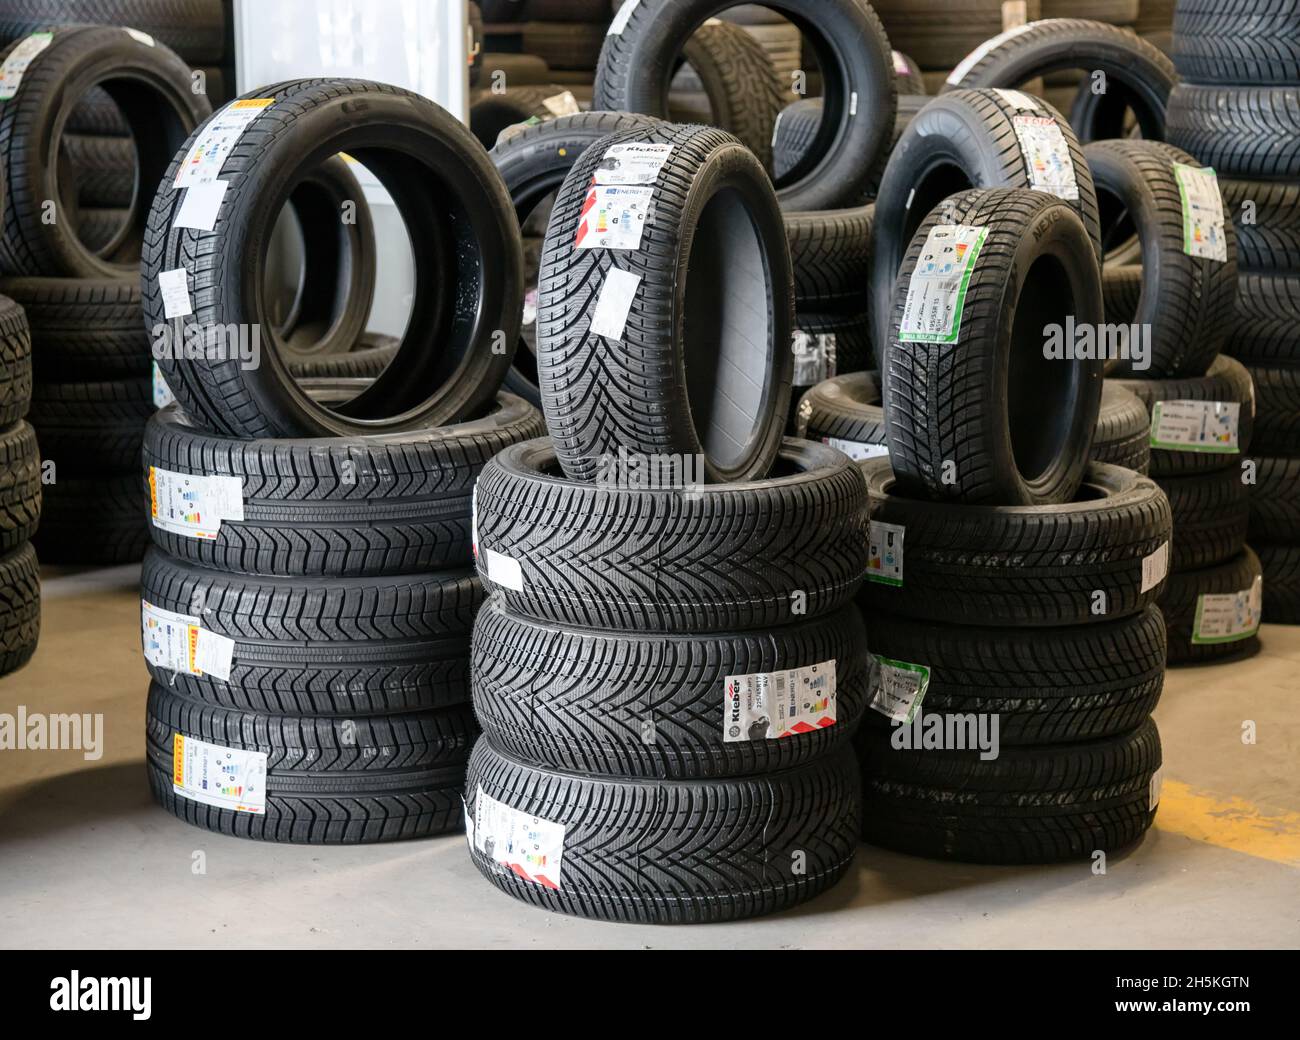 Turin, Italien - 10. November 2021: Neue Pirelli- und Kleber-Winterreifen  werden beim Reifenhändler für den Saisonwechsel ausgestellt Stockfotografie  - Alamy